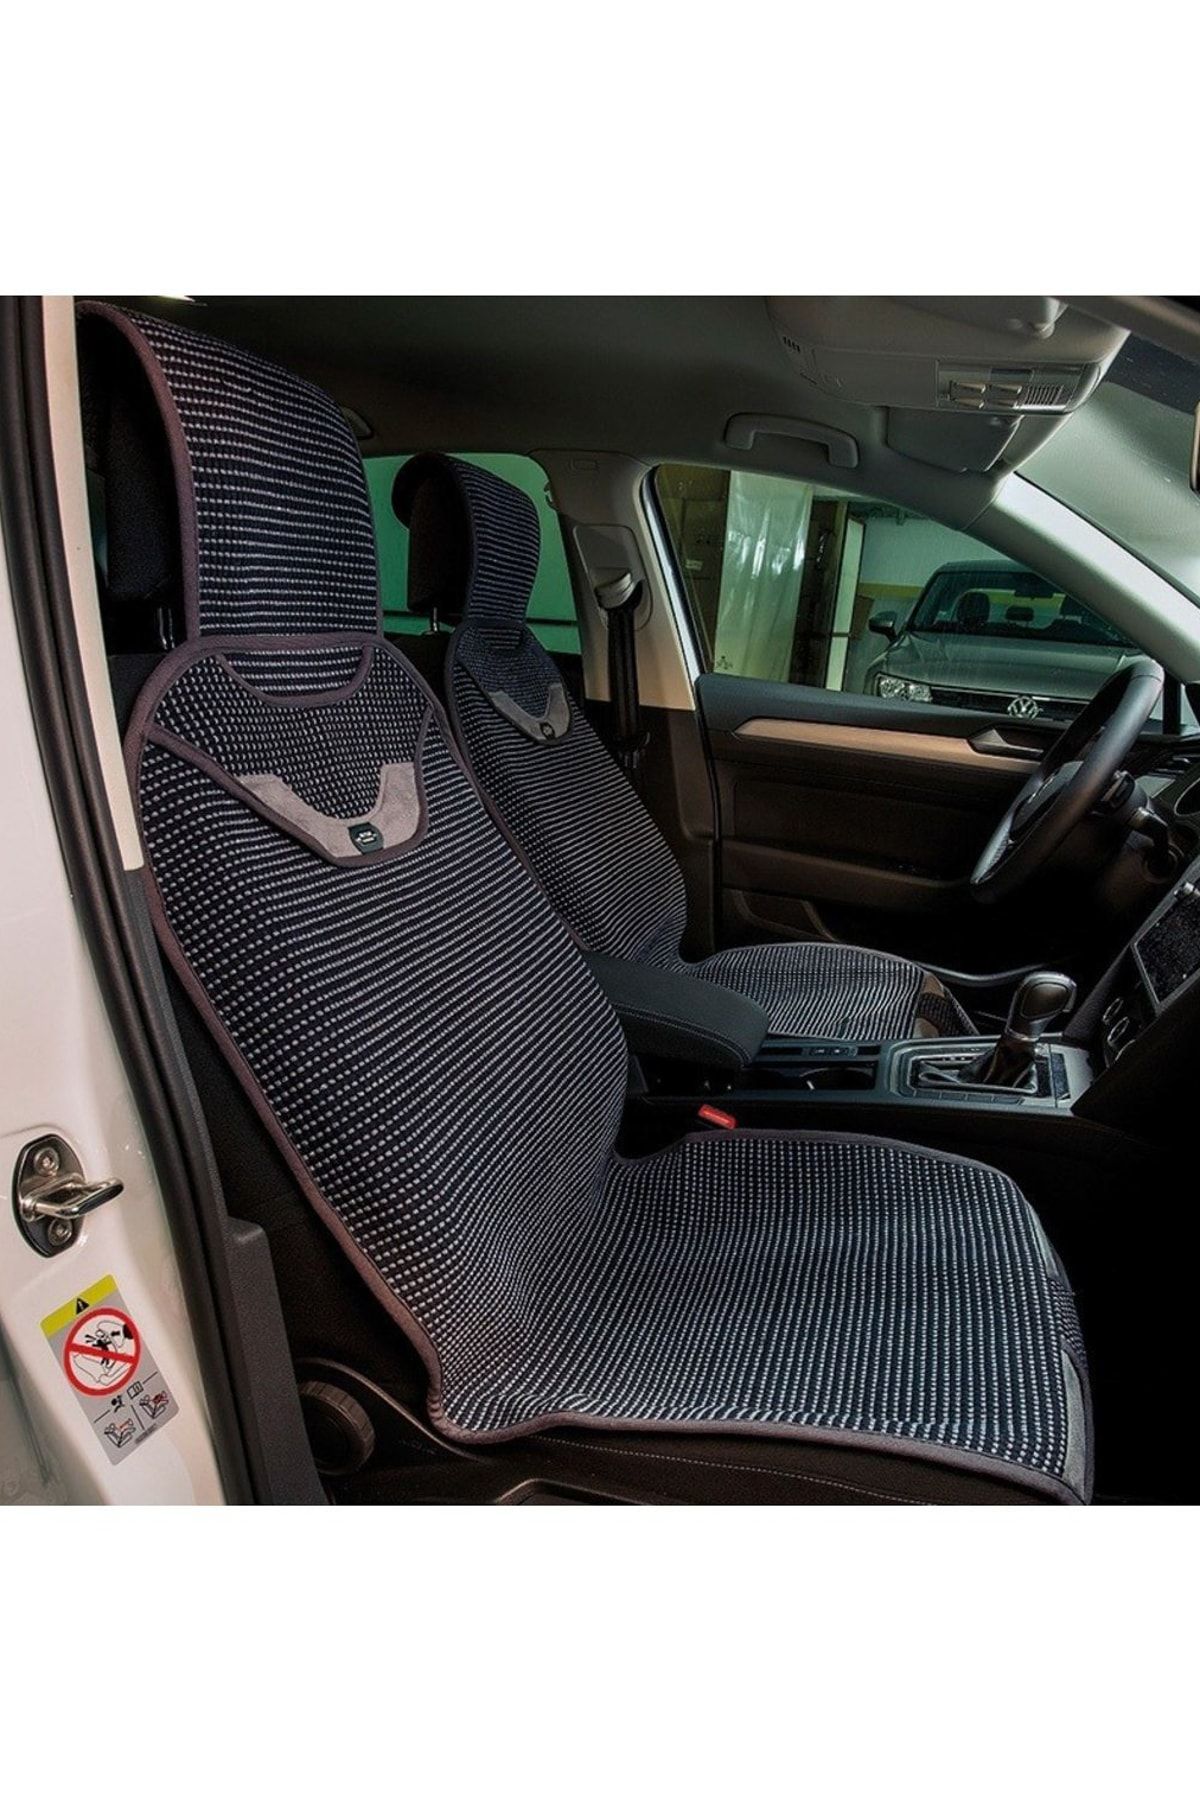 Space Renault Tüm Modellerine Uyumlu Senturk Auto Kilim Minder 2 li Set Ön Koltuklara Siyah Gri